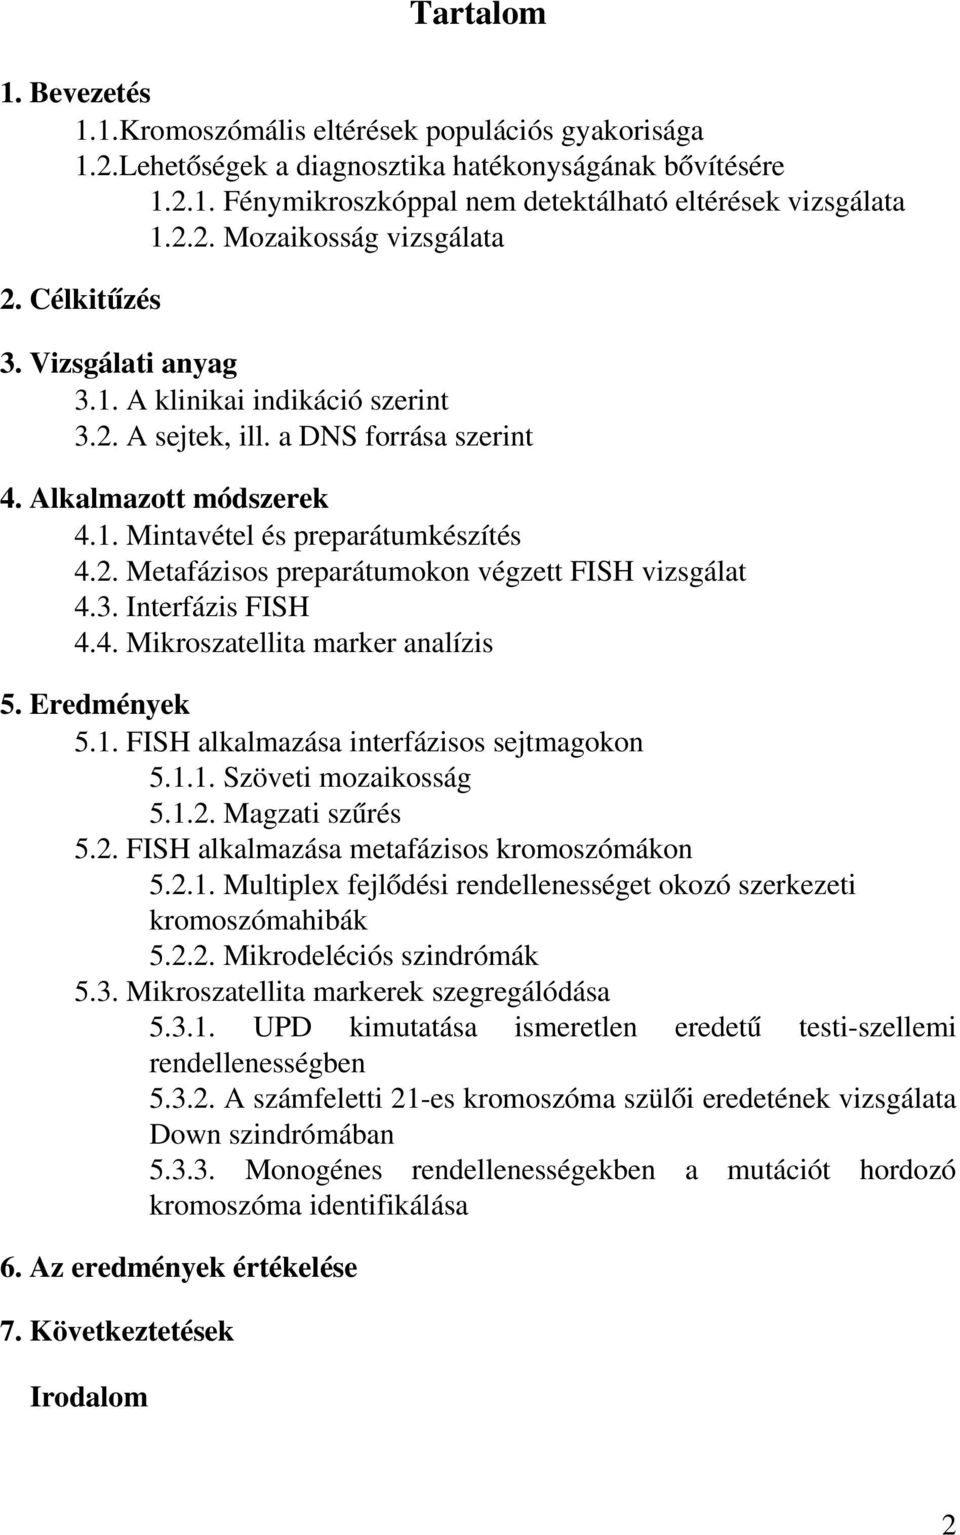 3. Interfázis FISH 4.4. Mikroszatellita marker analízis 5. Eredmények 5.1. FISH alkalmazása interfázisos sejtmagokon 5.1.1. Szöveti mozaikosság 5.1.2. Magzati szűrés 5.2. FISH alkalmazása metafázisos kromoszómákon 5.